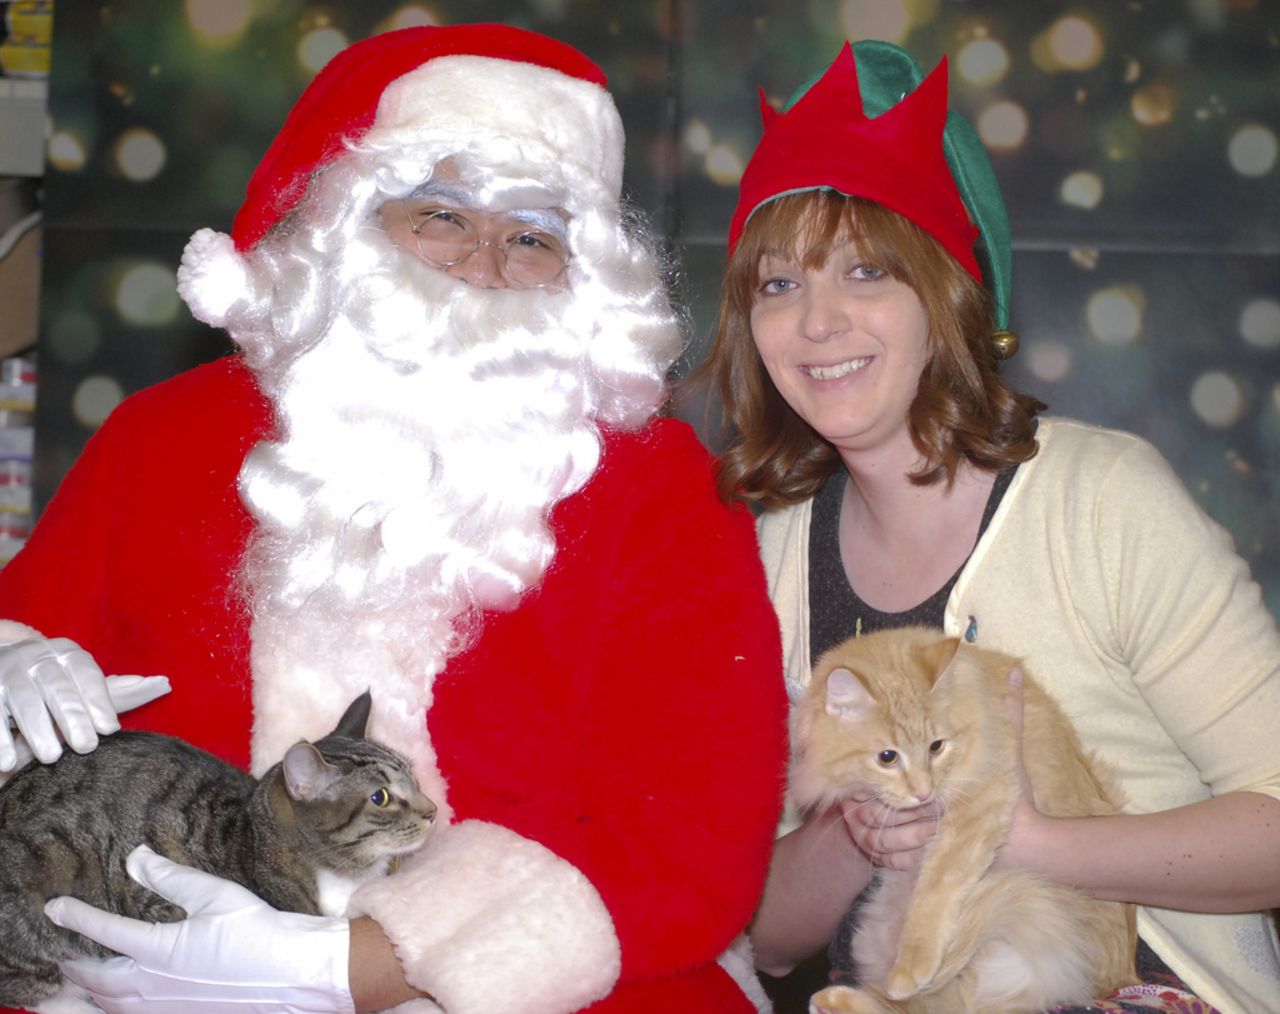 Carissa Rhea, a la derecha, posa con Santa y sus gatos Wall-E y Eva durante el evento de beneficencia para Furkids en 2010.